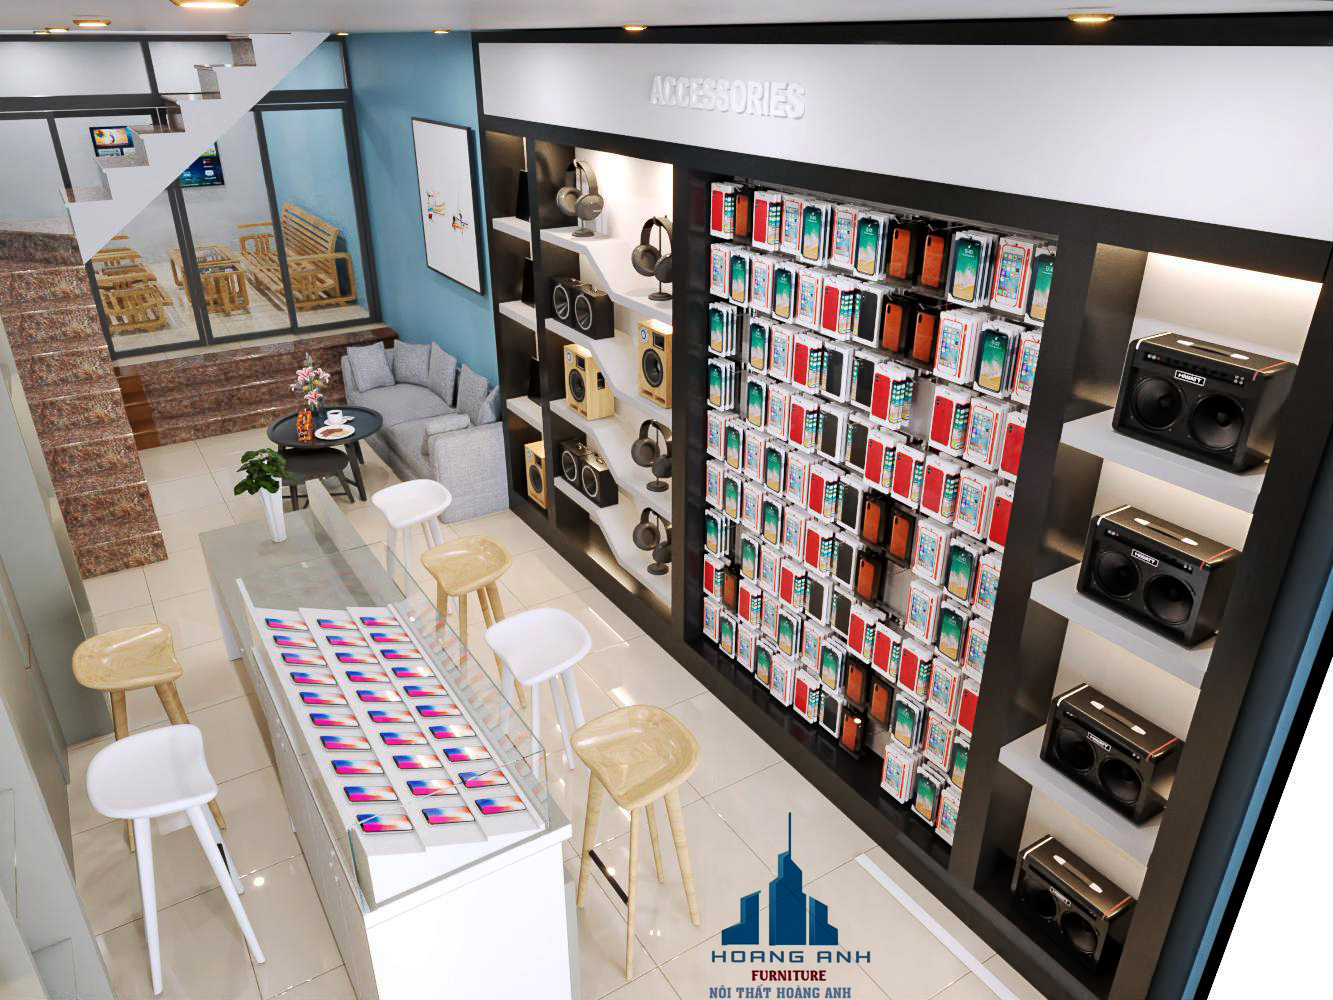 Chào mừng đến với thiết kế nội thất cửa hàng điện thoại của chúng tôi trong năm 2024! Chúng tôi cung cấp giải pháp thiết kế tối ưu hóa không gian, giúp cửa hàng của bạn có được sự thuận tiện và chuyên nghiệp. Hãy xem hình ảnh liên quan để có thêm cảm hứng thiết kế cho cửa hàng của bạn.